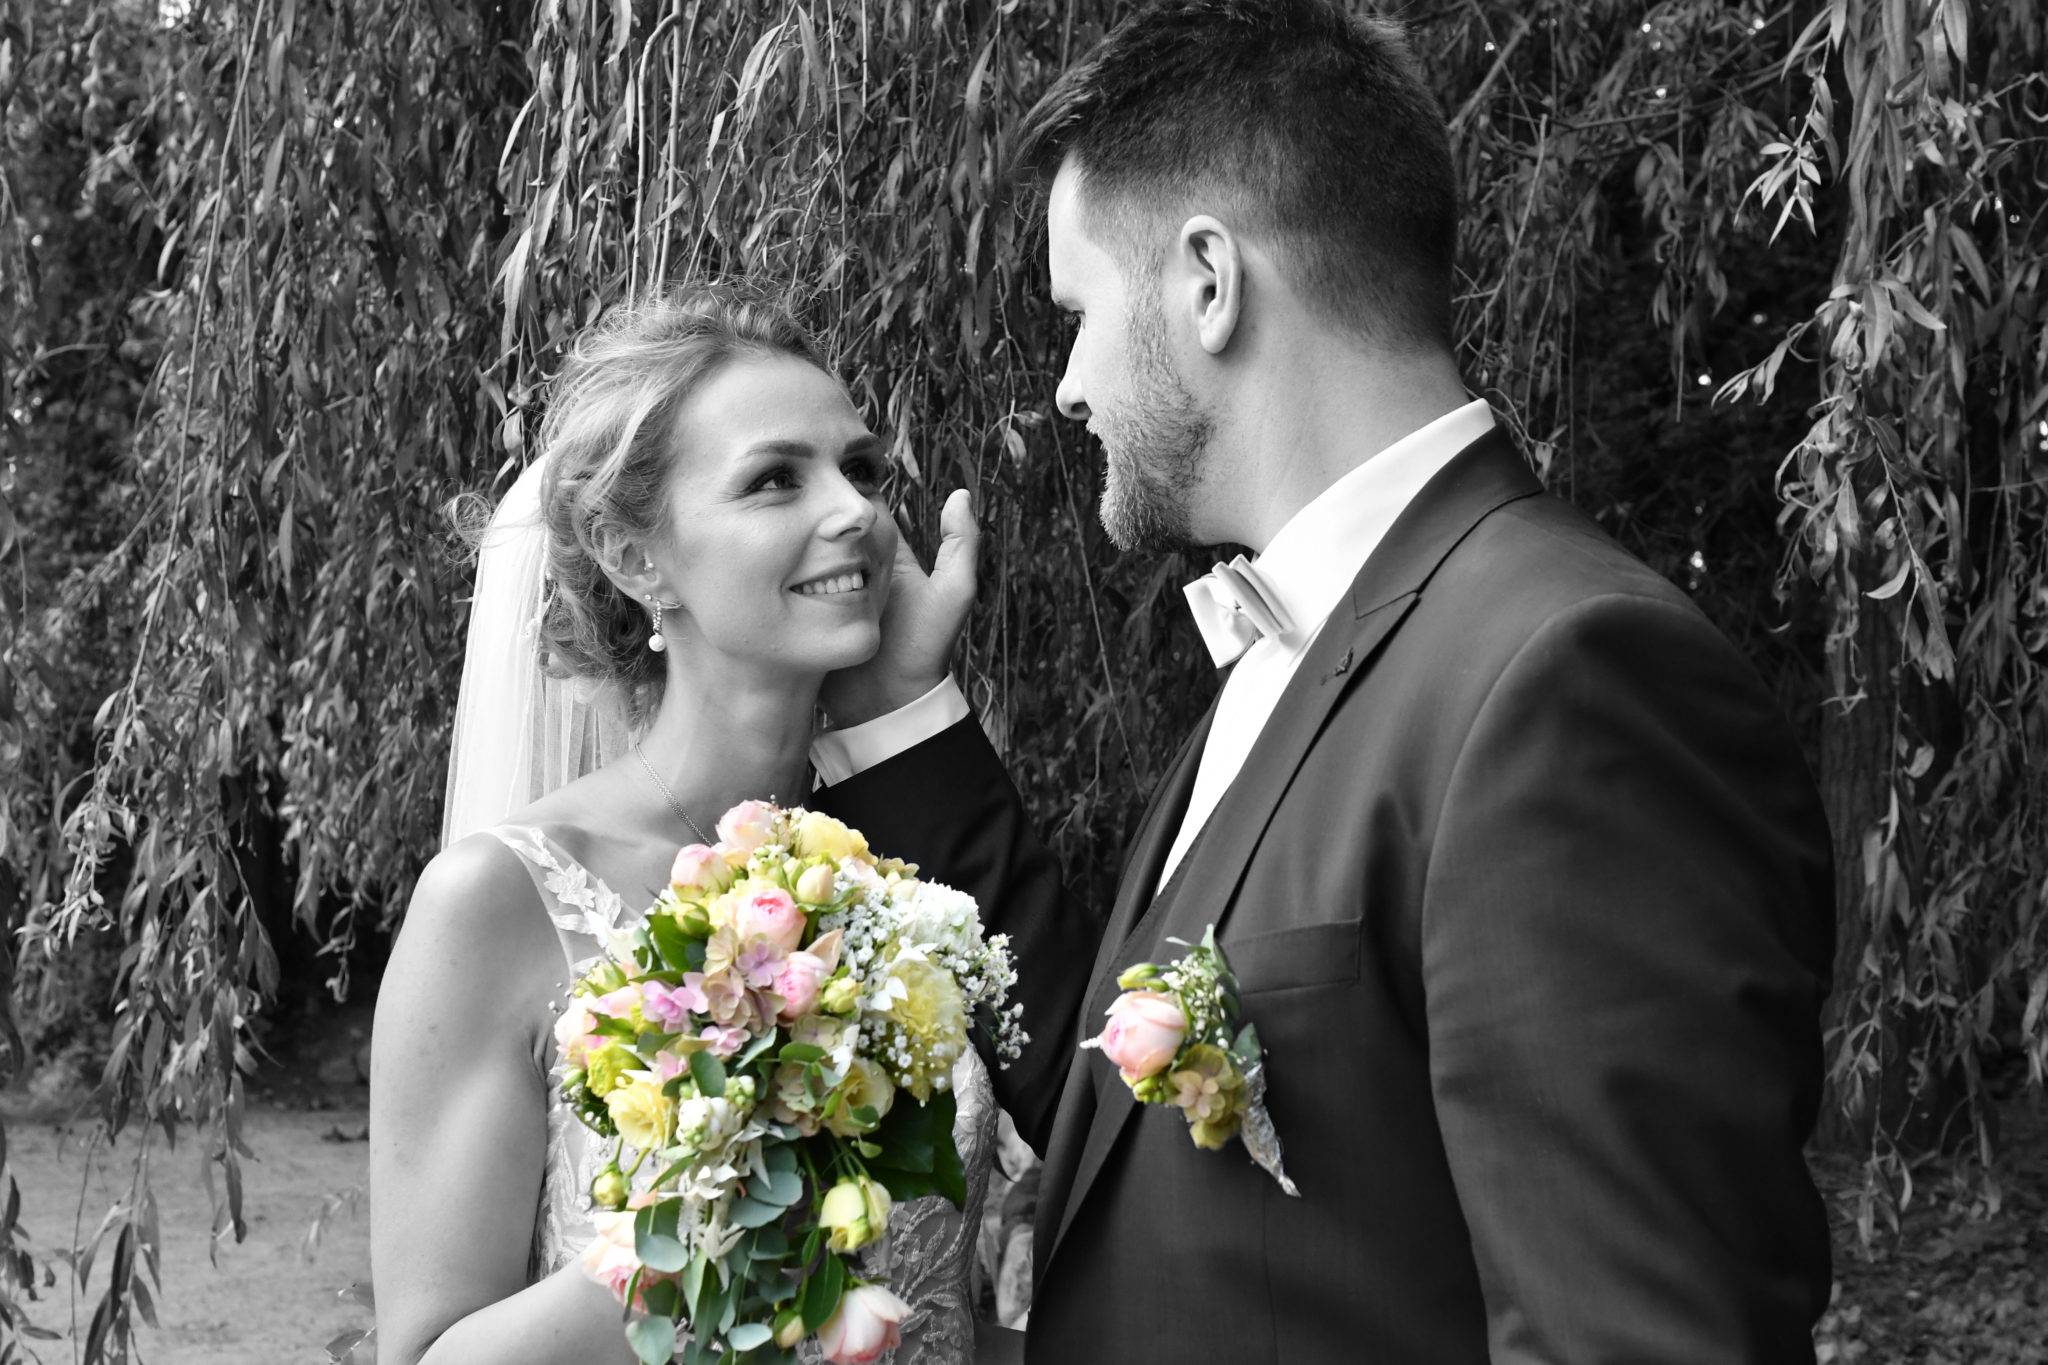 Brautpaarshooting in schwarzweiss mit schönem Brautstrauss in Farbe